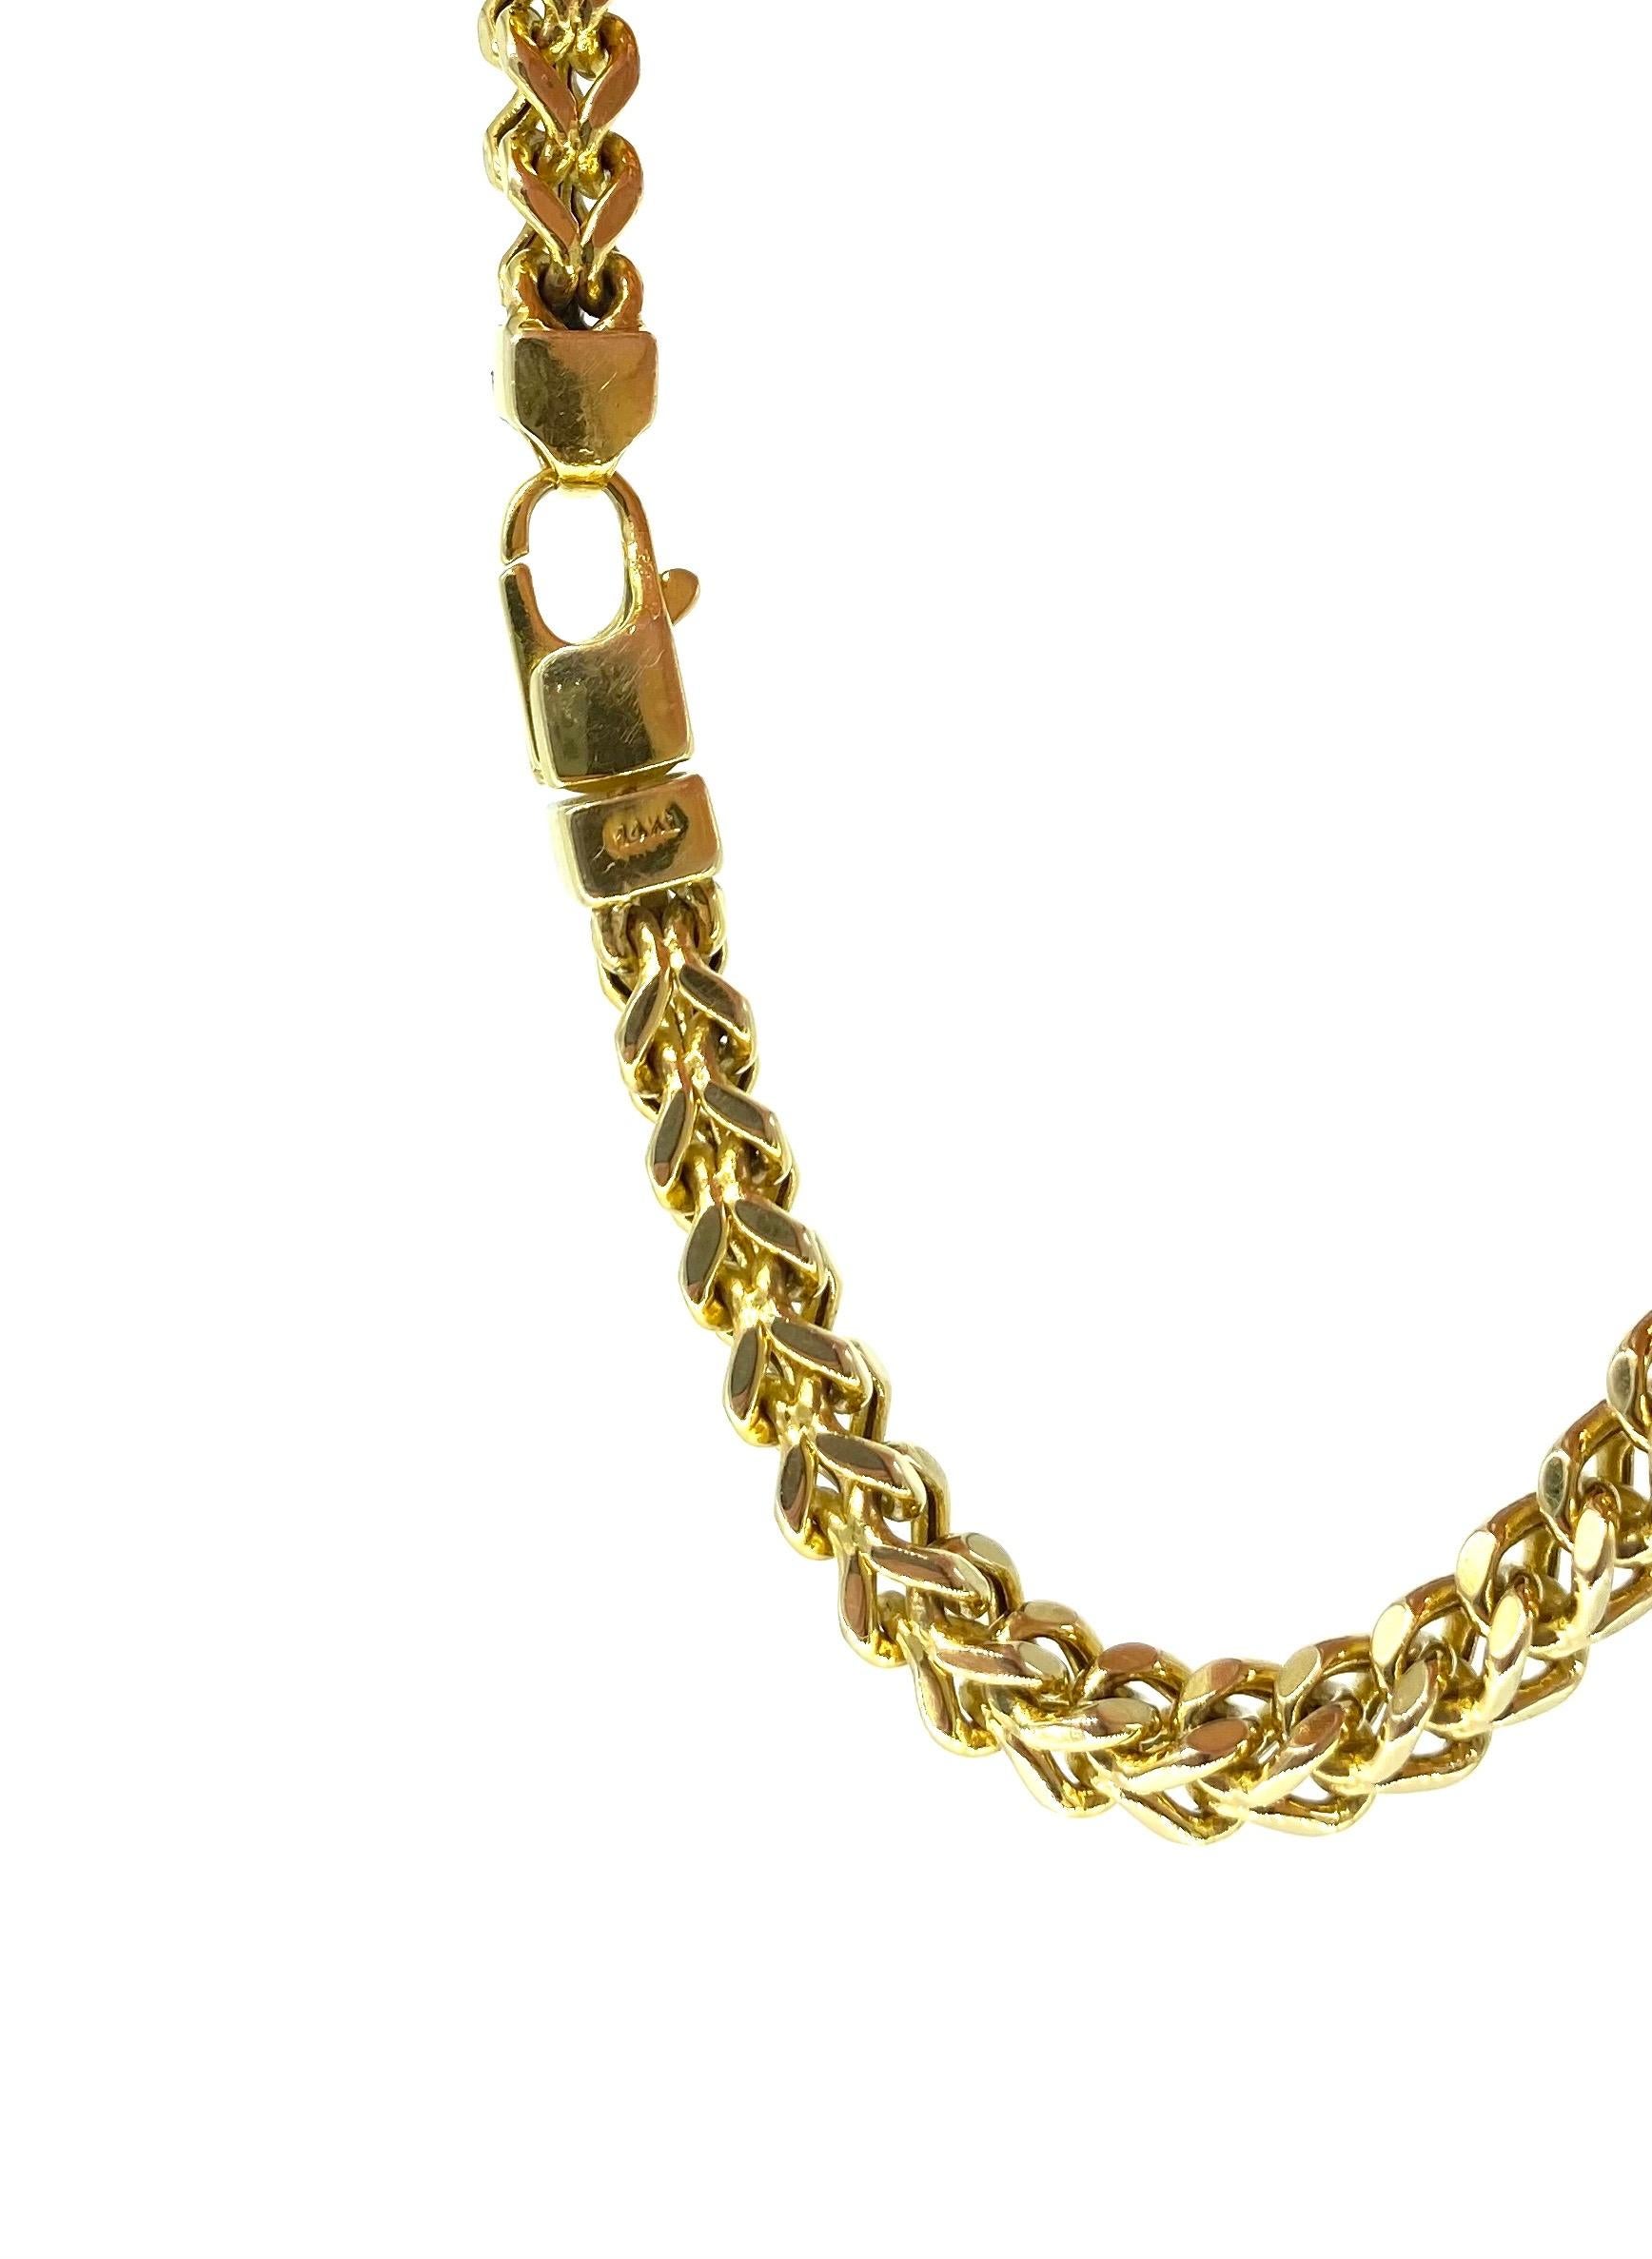 Women's or Men's Vintage Men’s Franco Link Bracelet 14k Gold